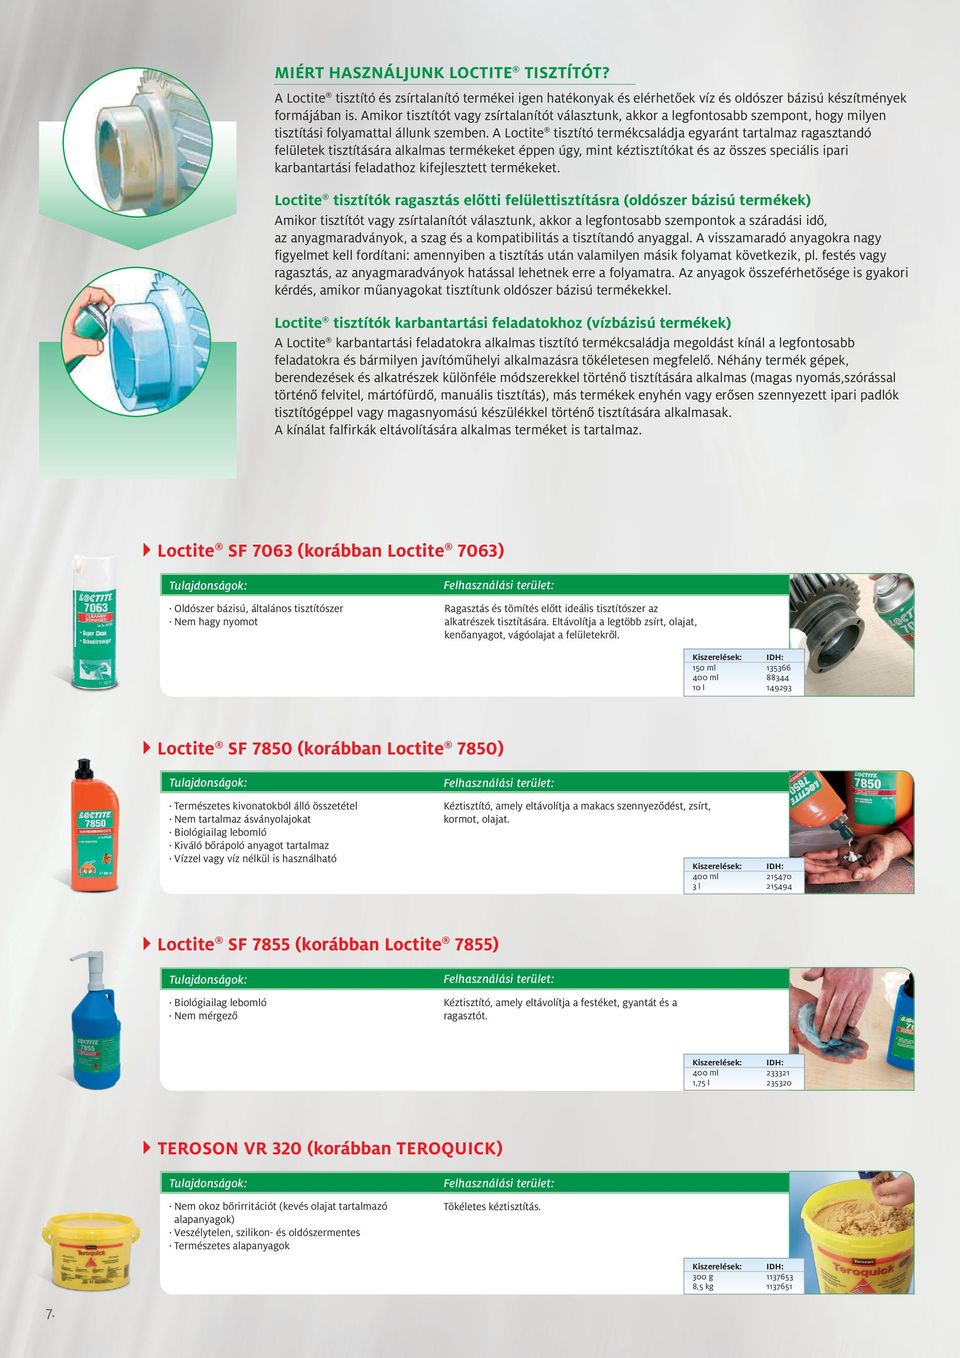 A Loctite tisztító termékcsaládja egyaránt tartalmaz ragasztandó felületek tisztítására alkalmas termékeket éppen úgy, mint kéztisztítókat és az összes speciális ipari karbantartási feladathoz